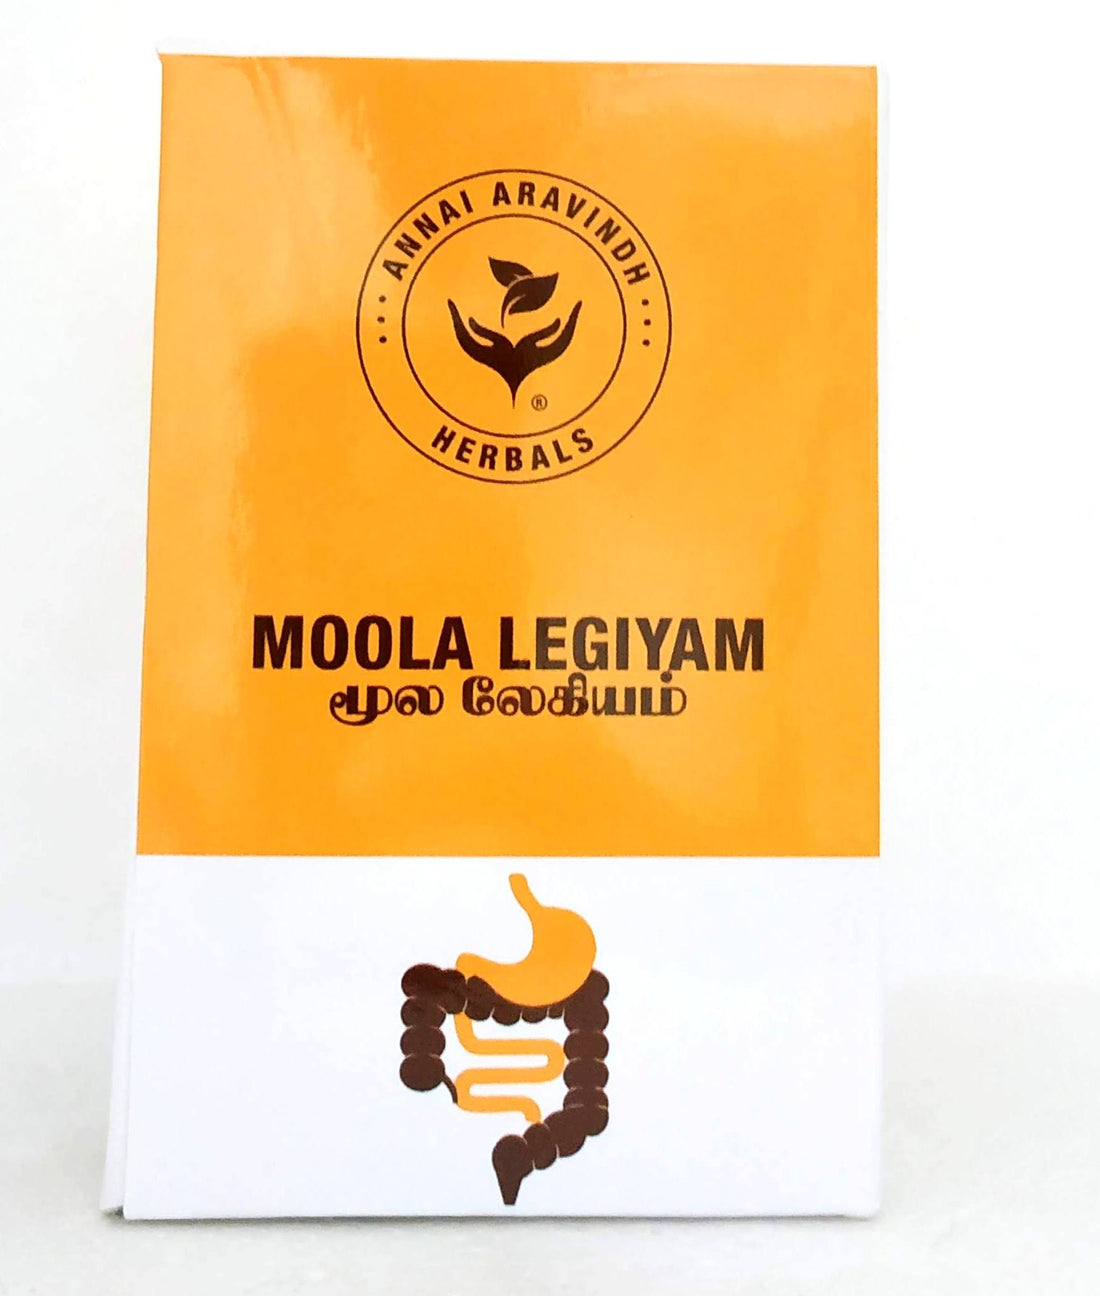 Shop Moola legiyam 250gm at price 170.00 from Annai Aravindh Online - Ayush Care